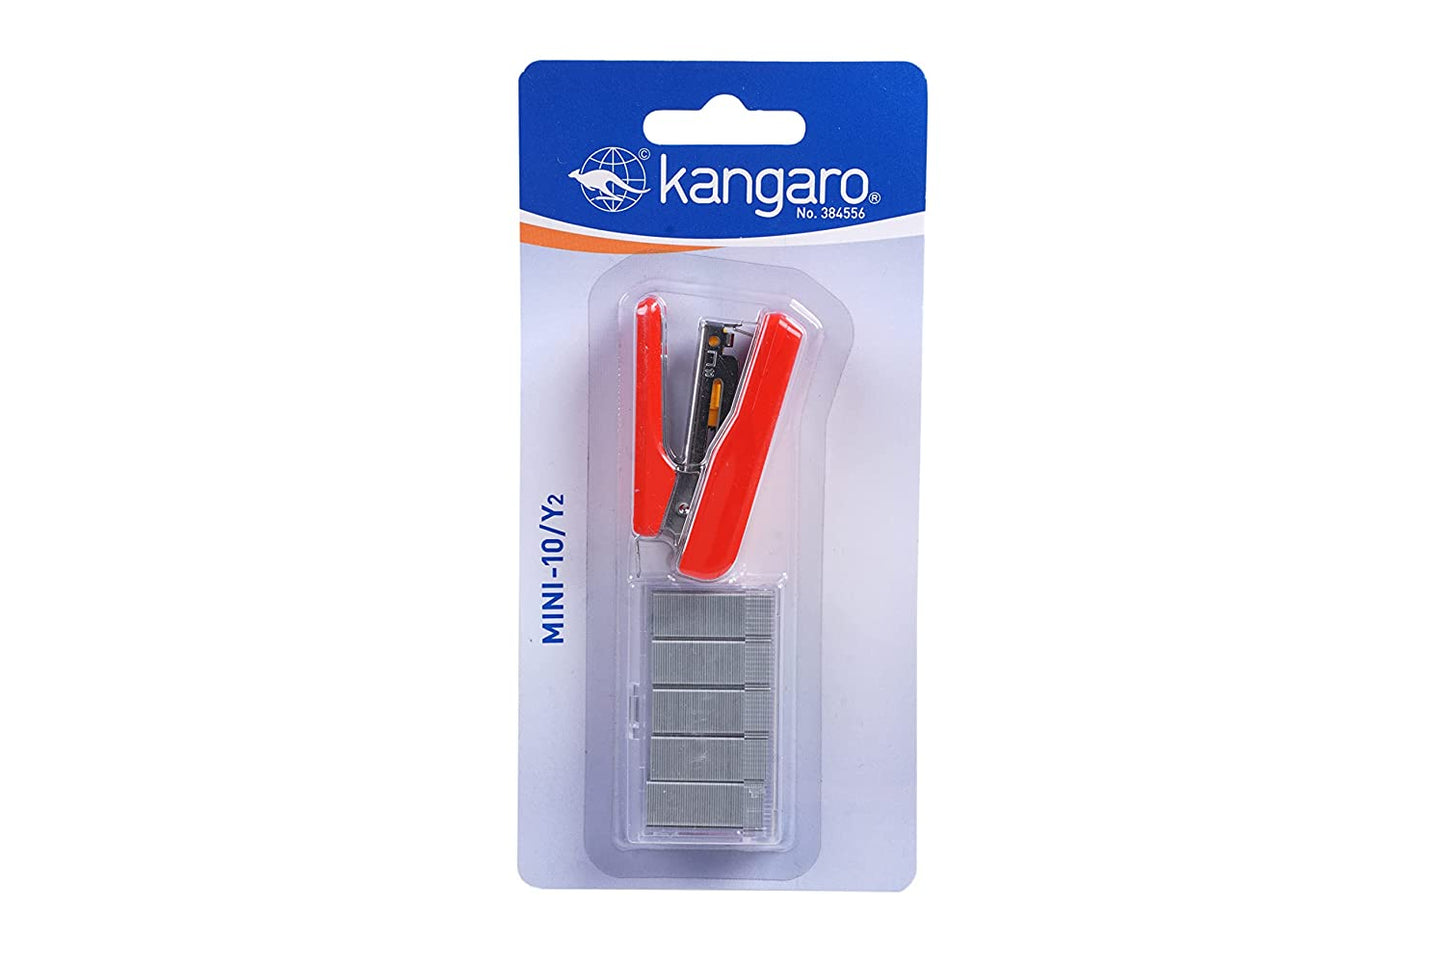 Kangaro /Sets Mini-10/Y2 - Color May Vary